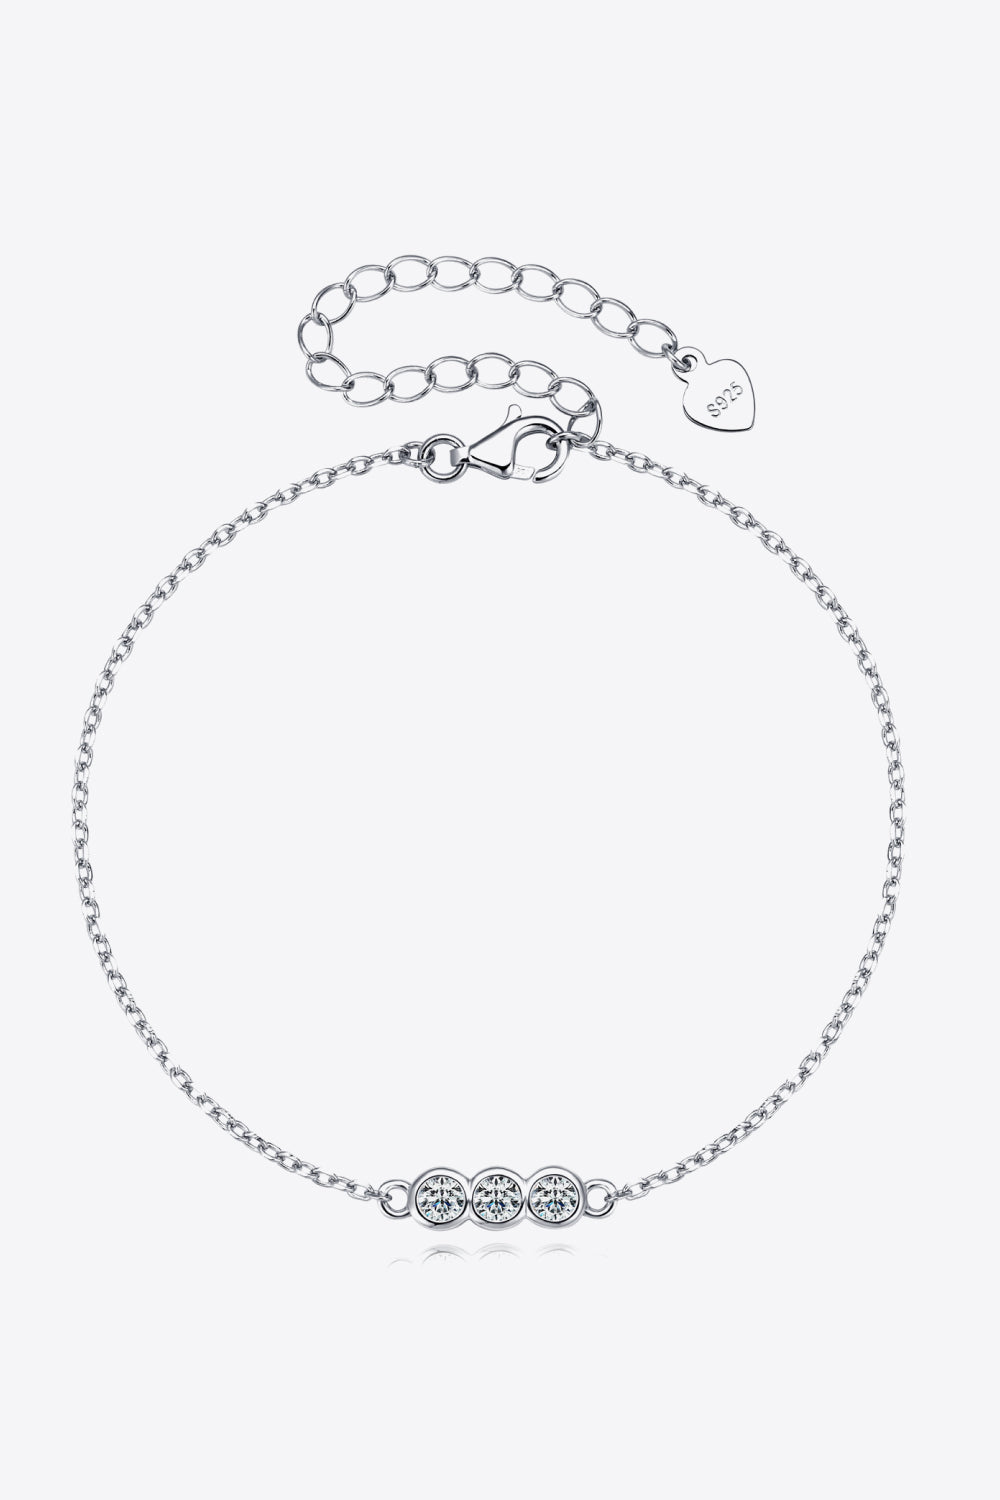 Adored Moissanite 925 Sterling Silver Bracelet - Silver / One Size - Women’s Jewelry - Bracelets - 5 - 2024